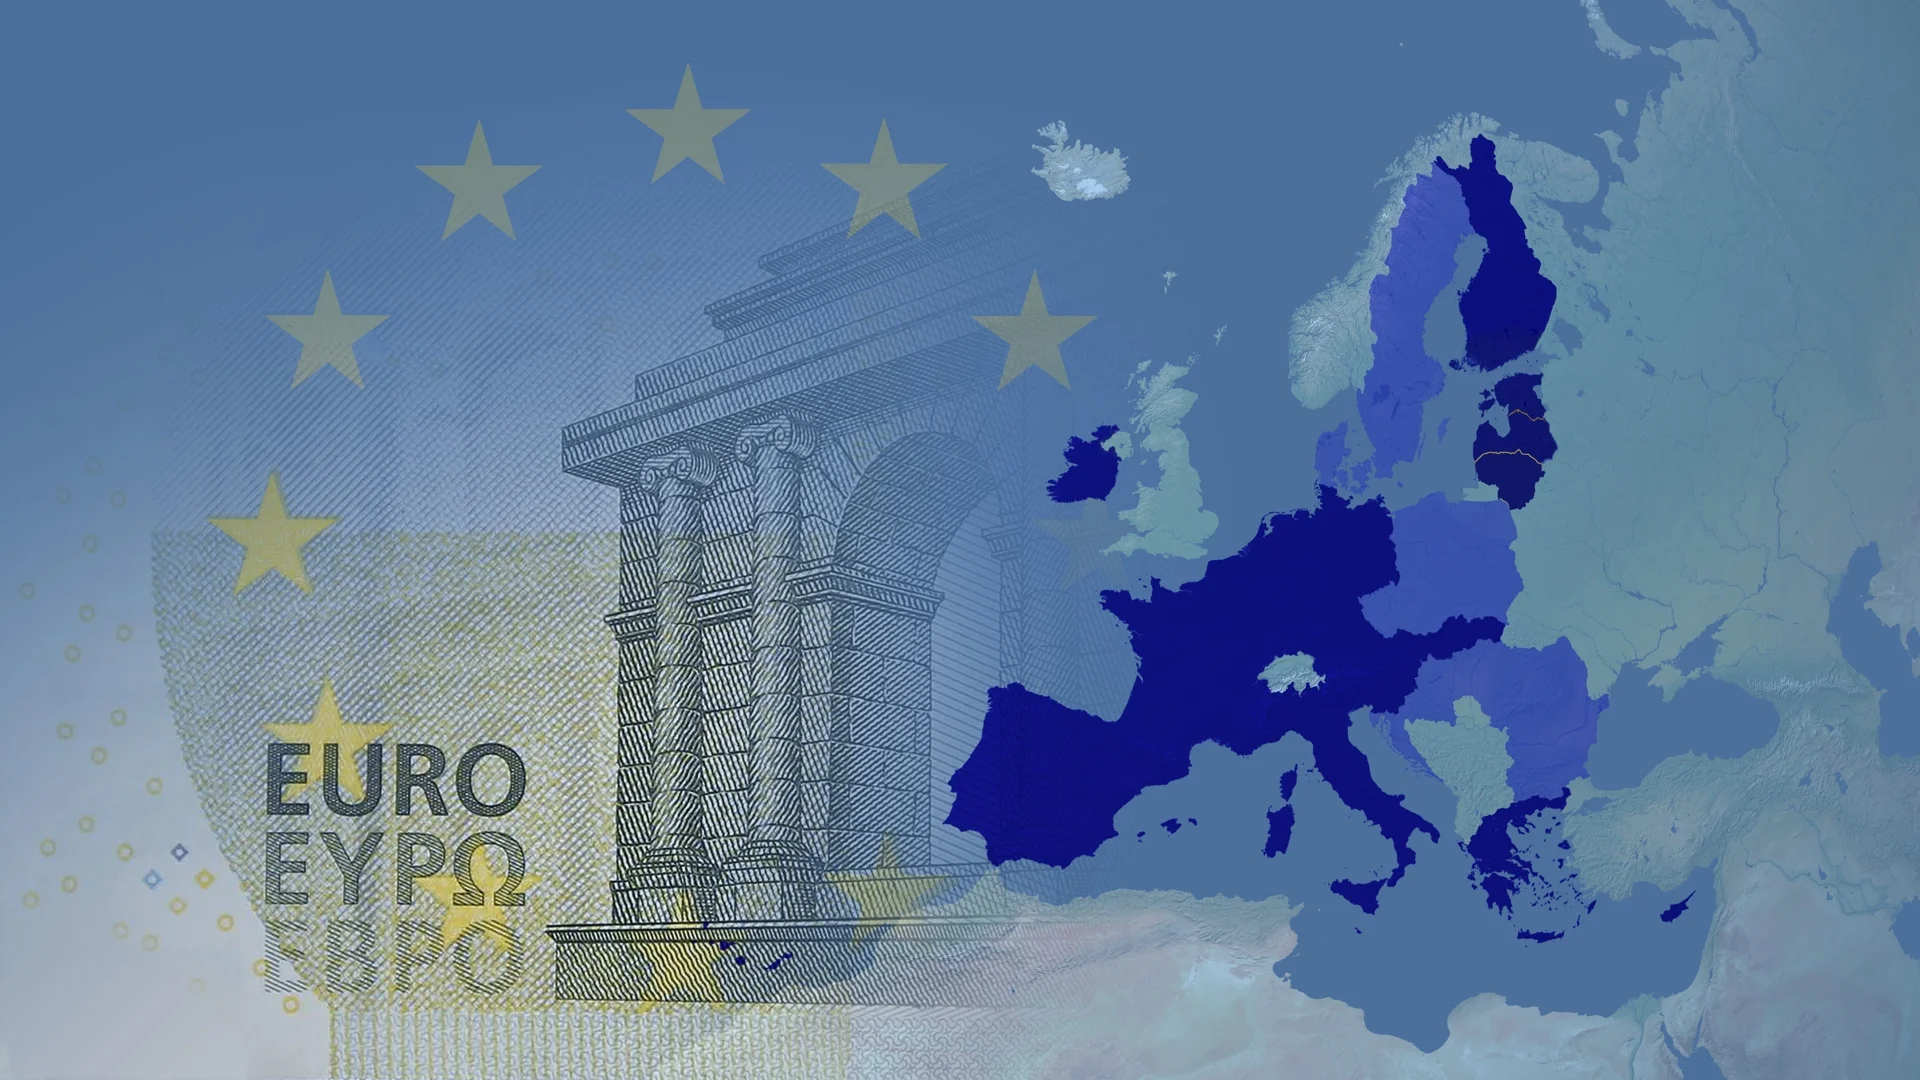 Приемането на еврото и цените в България: Известен икономист говори за реалността